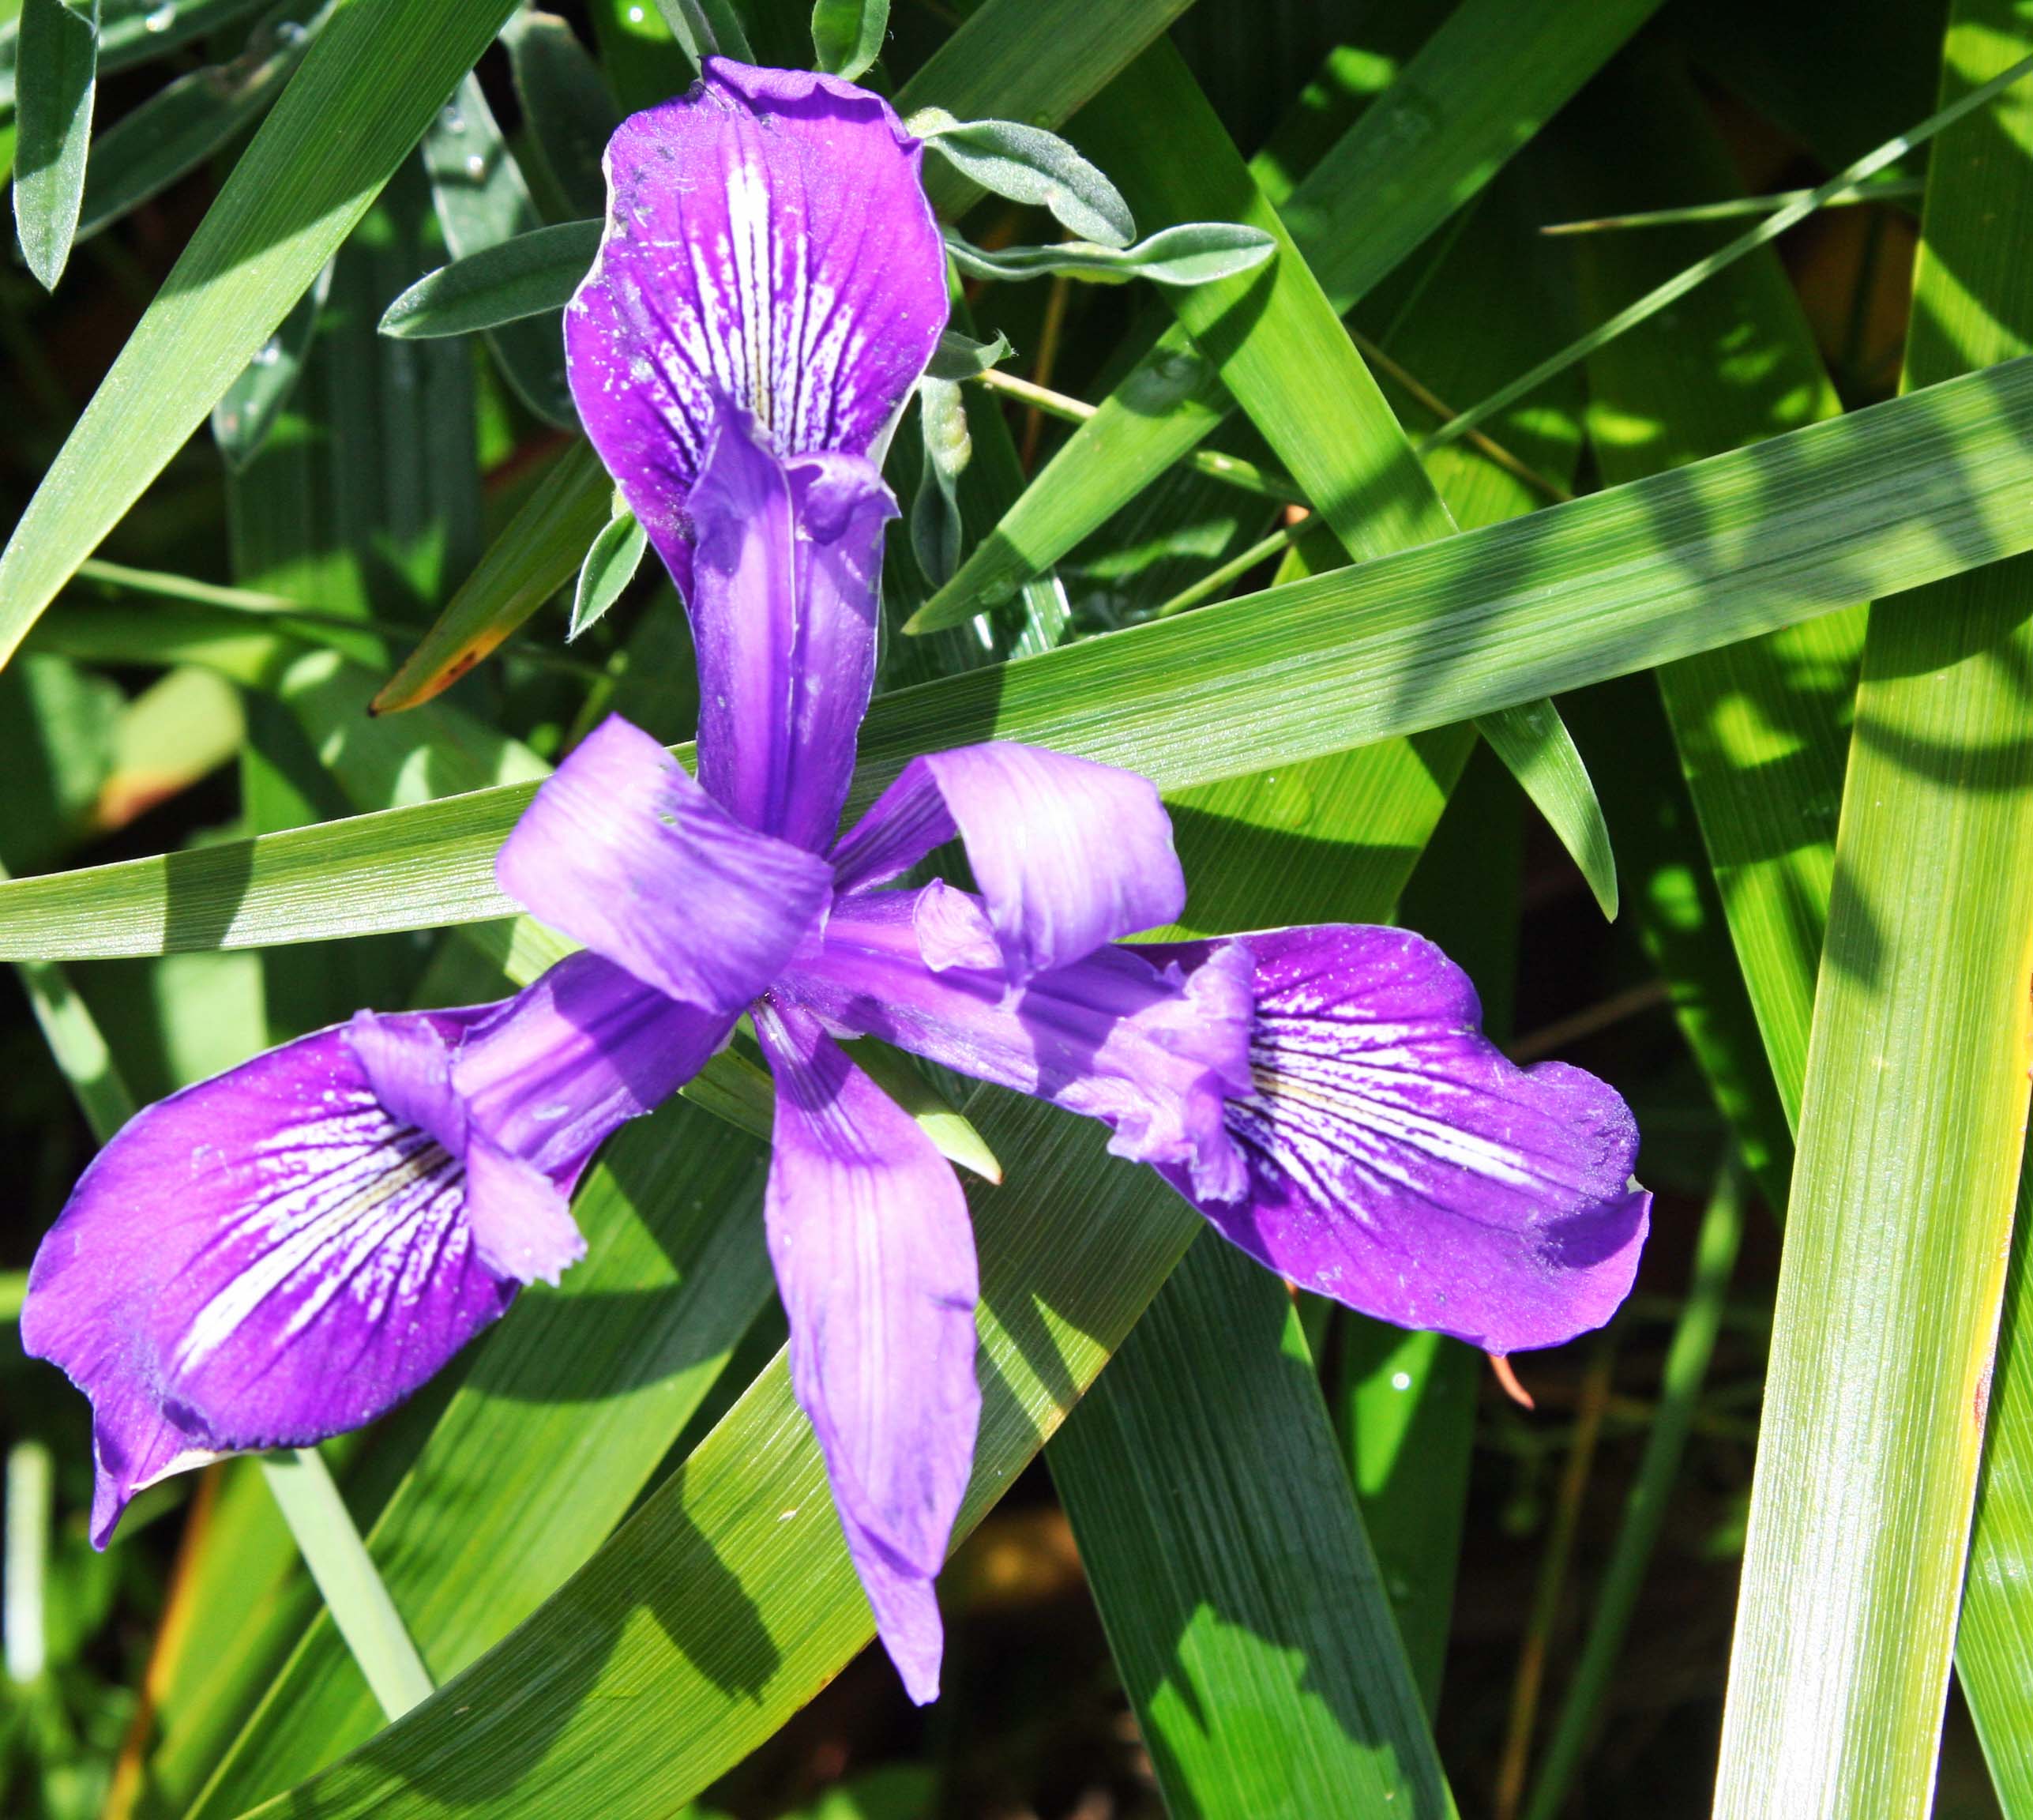 Iris growing near South Beach, Pt. Reyes National Seashore. Photo taken by Curtis Mekemson.